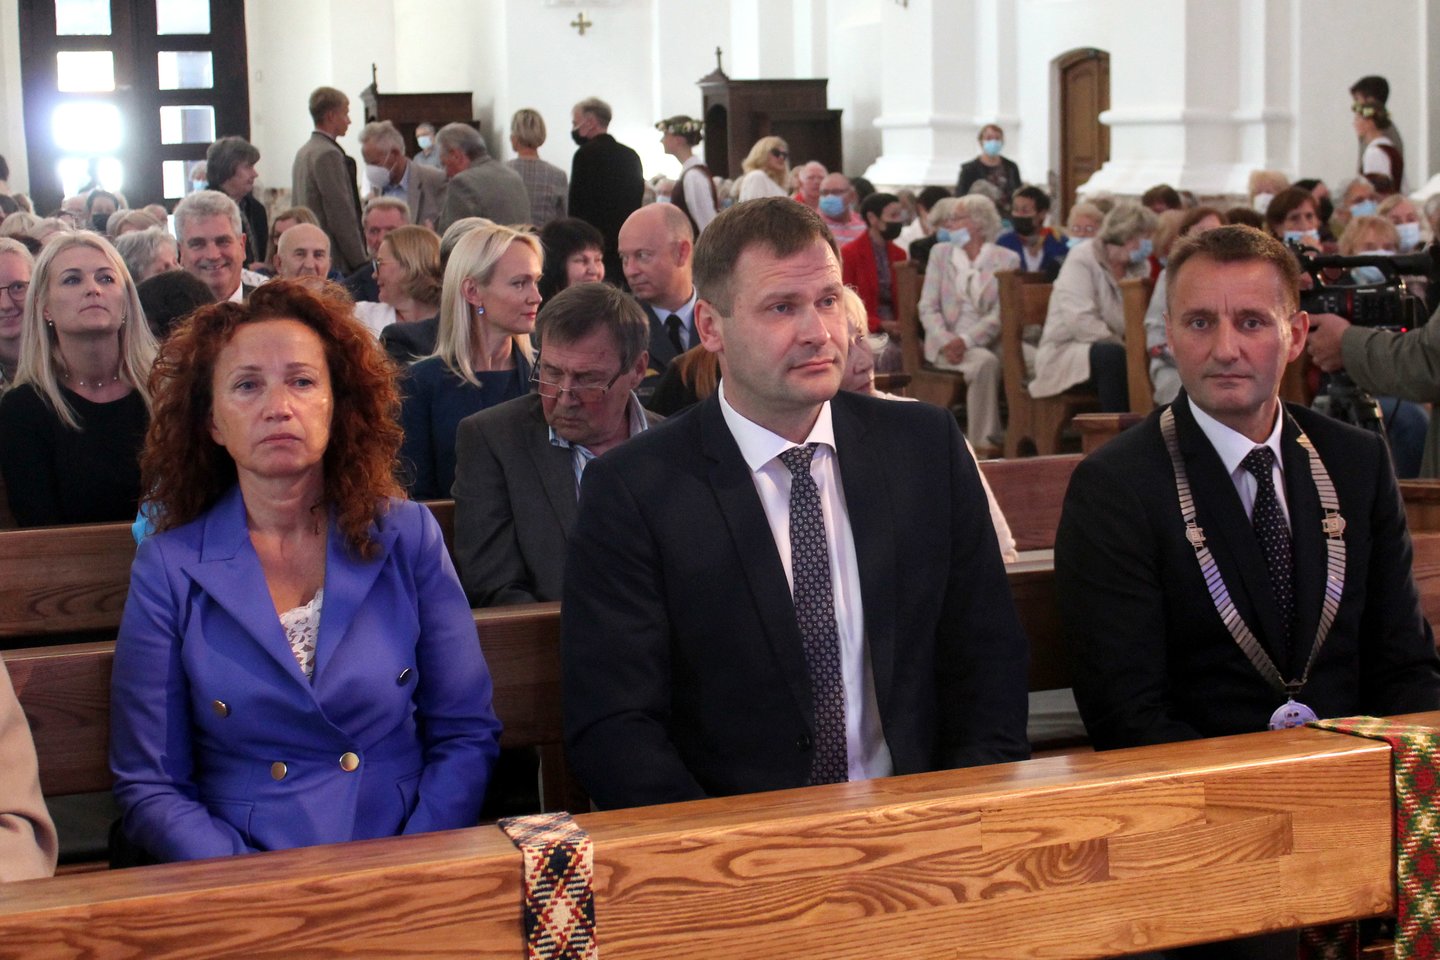  Iškilminga naujojo Šiaulių garbės piliečio inauguracija vyko Šiaulių katedroje.<br> R.Vitkaus nuotr.